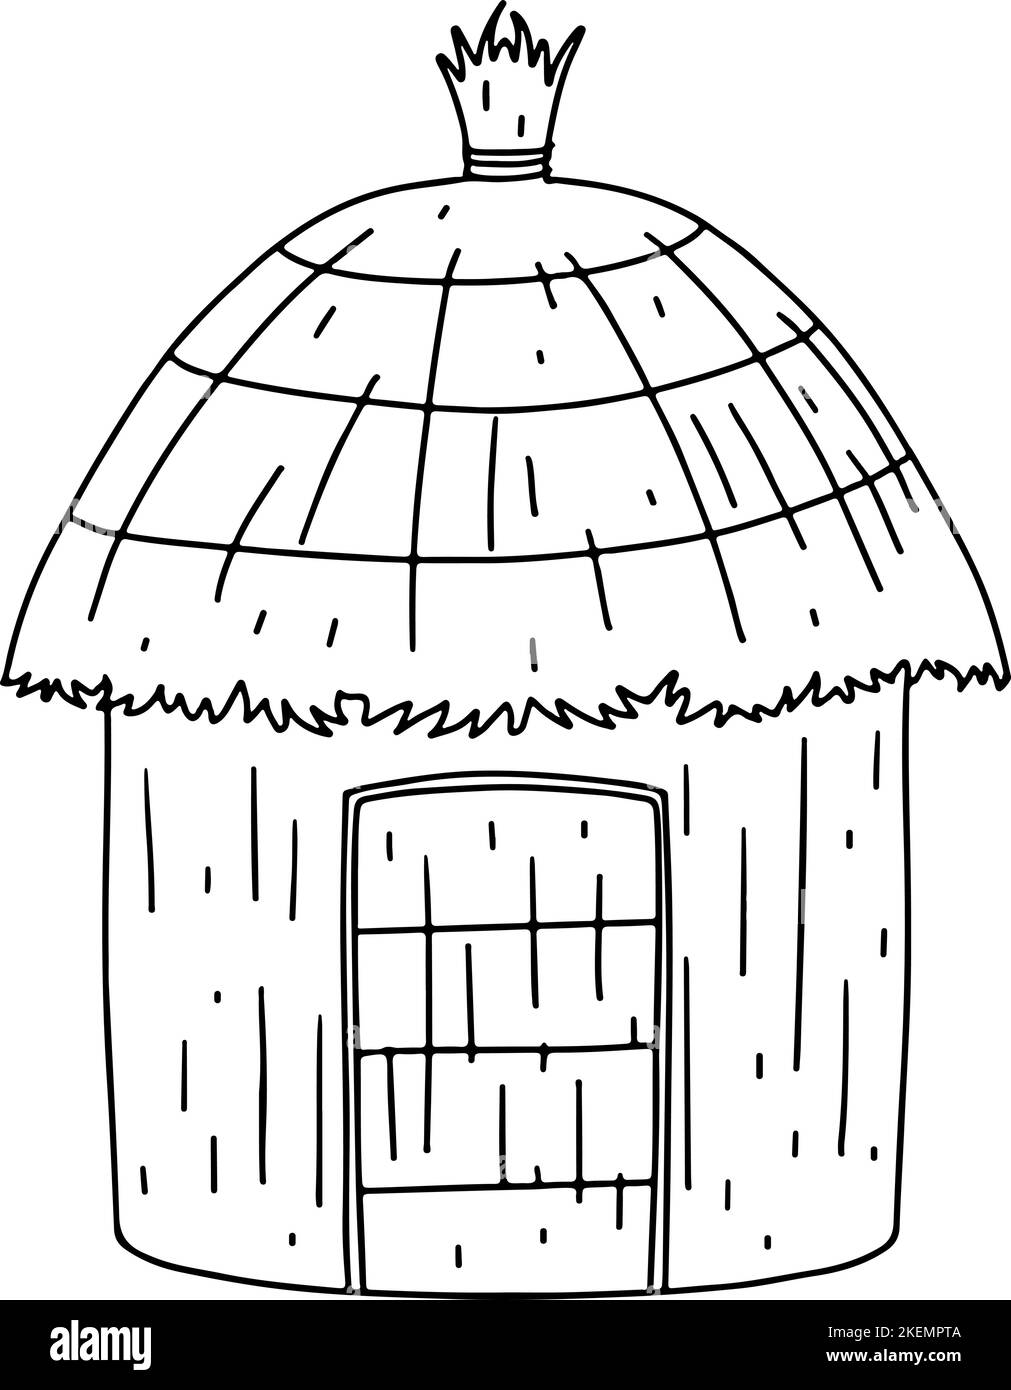 Afrikanisches Landhaus mit großem Dach im handgezeichneten Doodle-Stil. Typisches Südhaus. Vektorgrafik. Hütte mit Palmendach und authentischem Eingang Stock Vektor